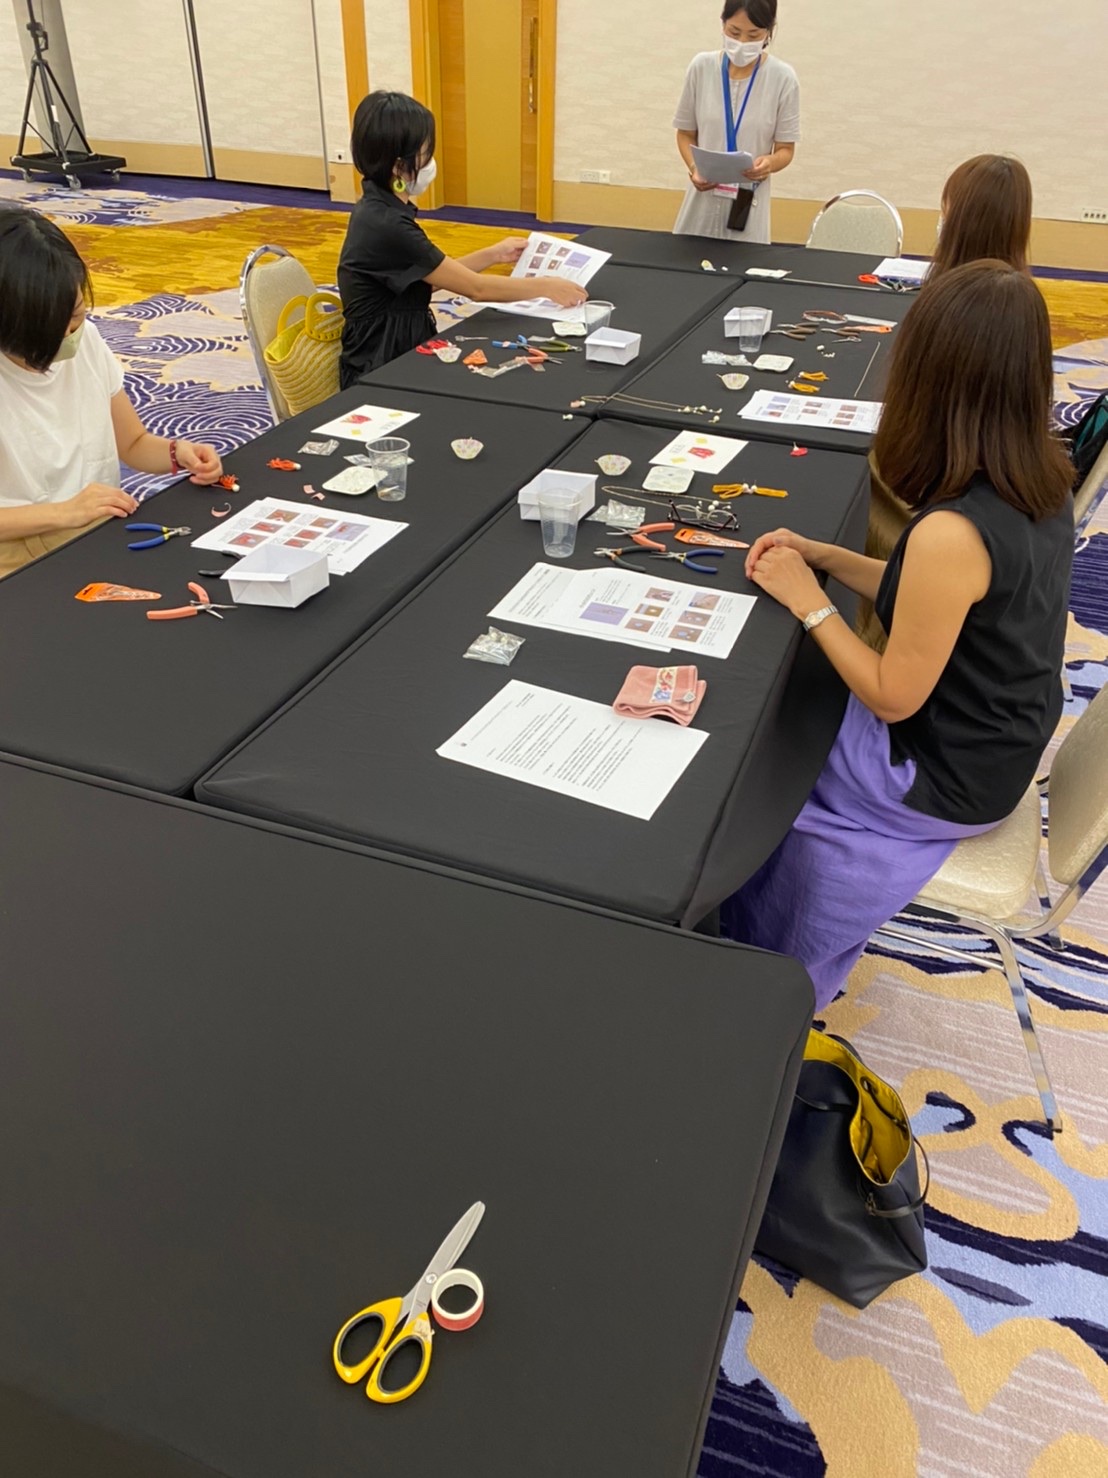 シンガポール日本人会 | マスクスタイルのためのアクセサリー3点セットの講習会と手作り品販売会報告